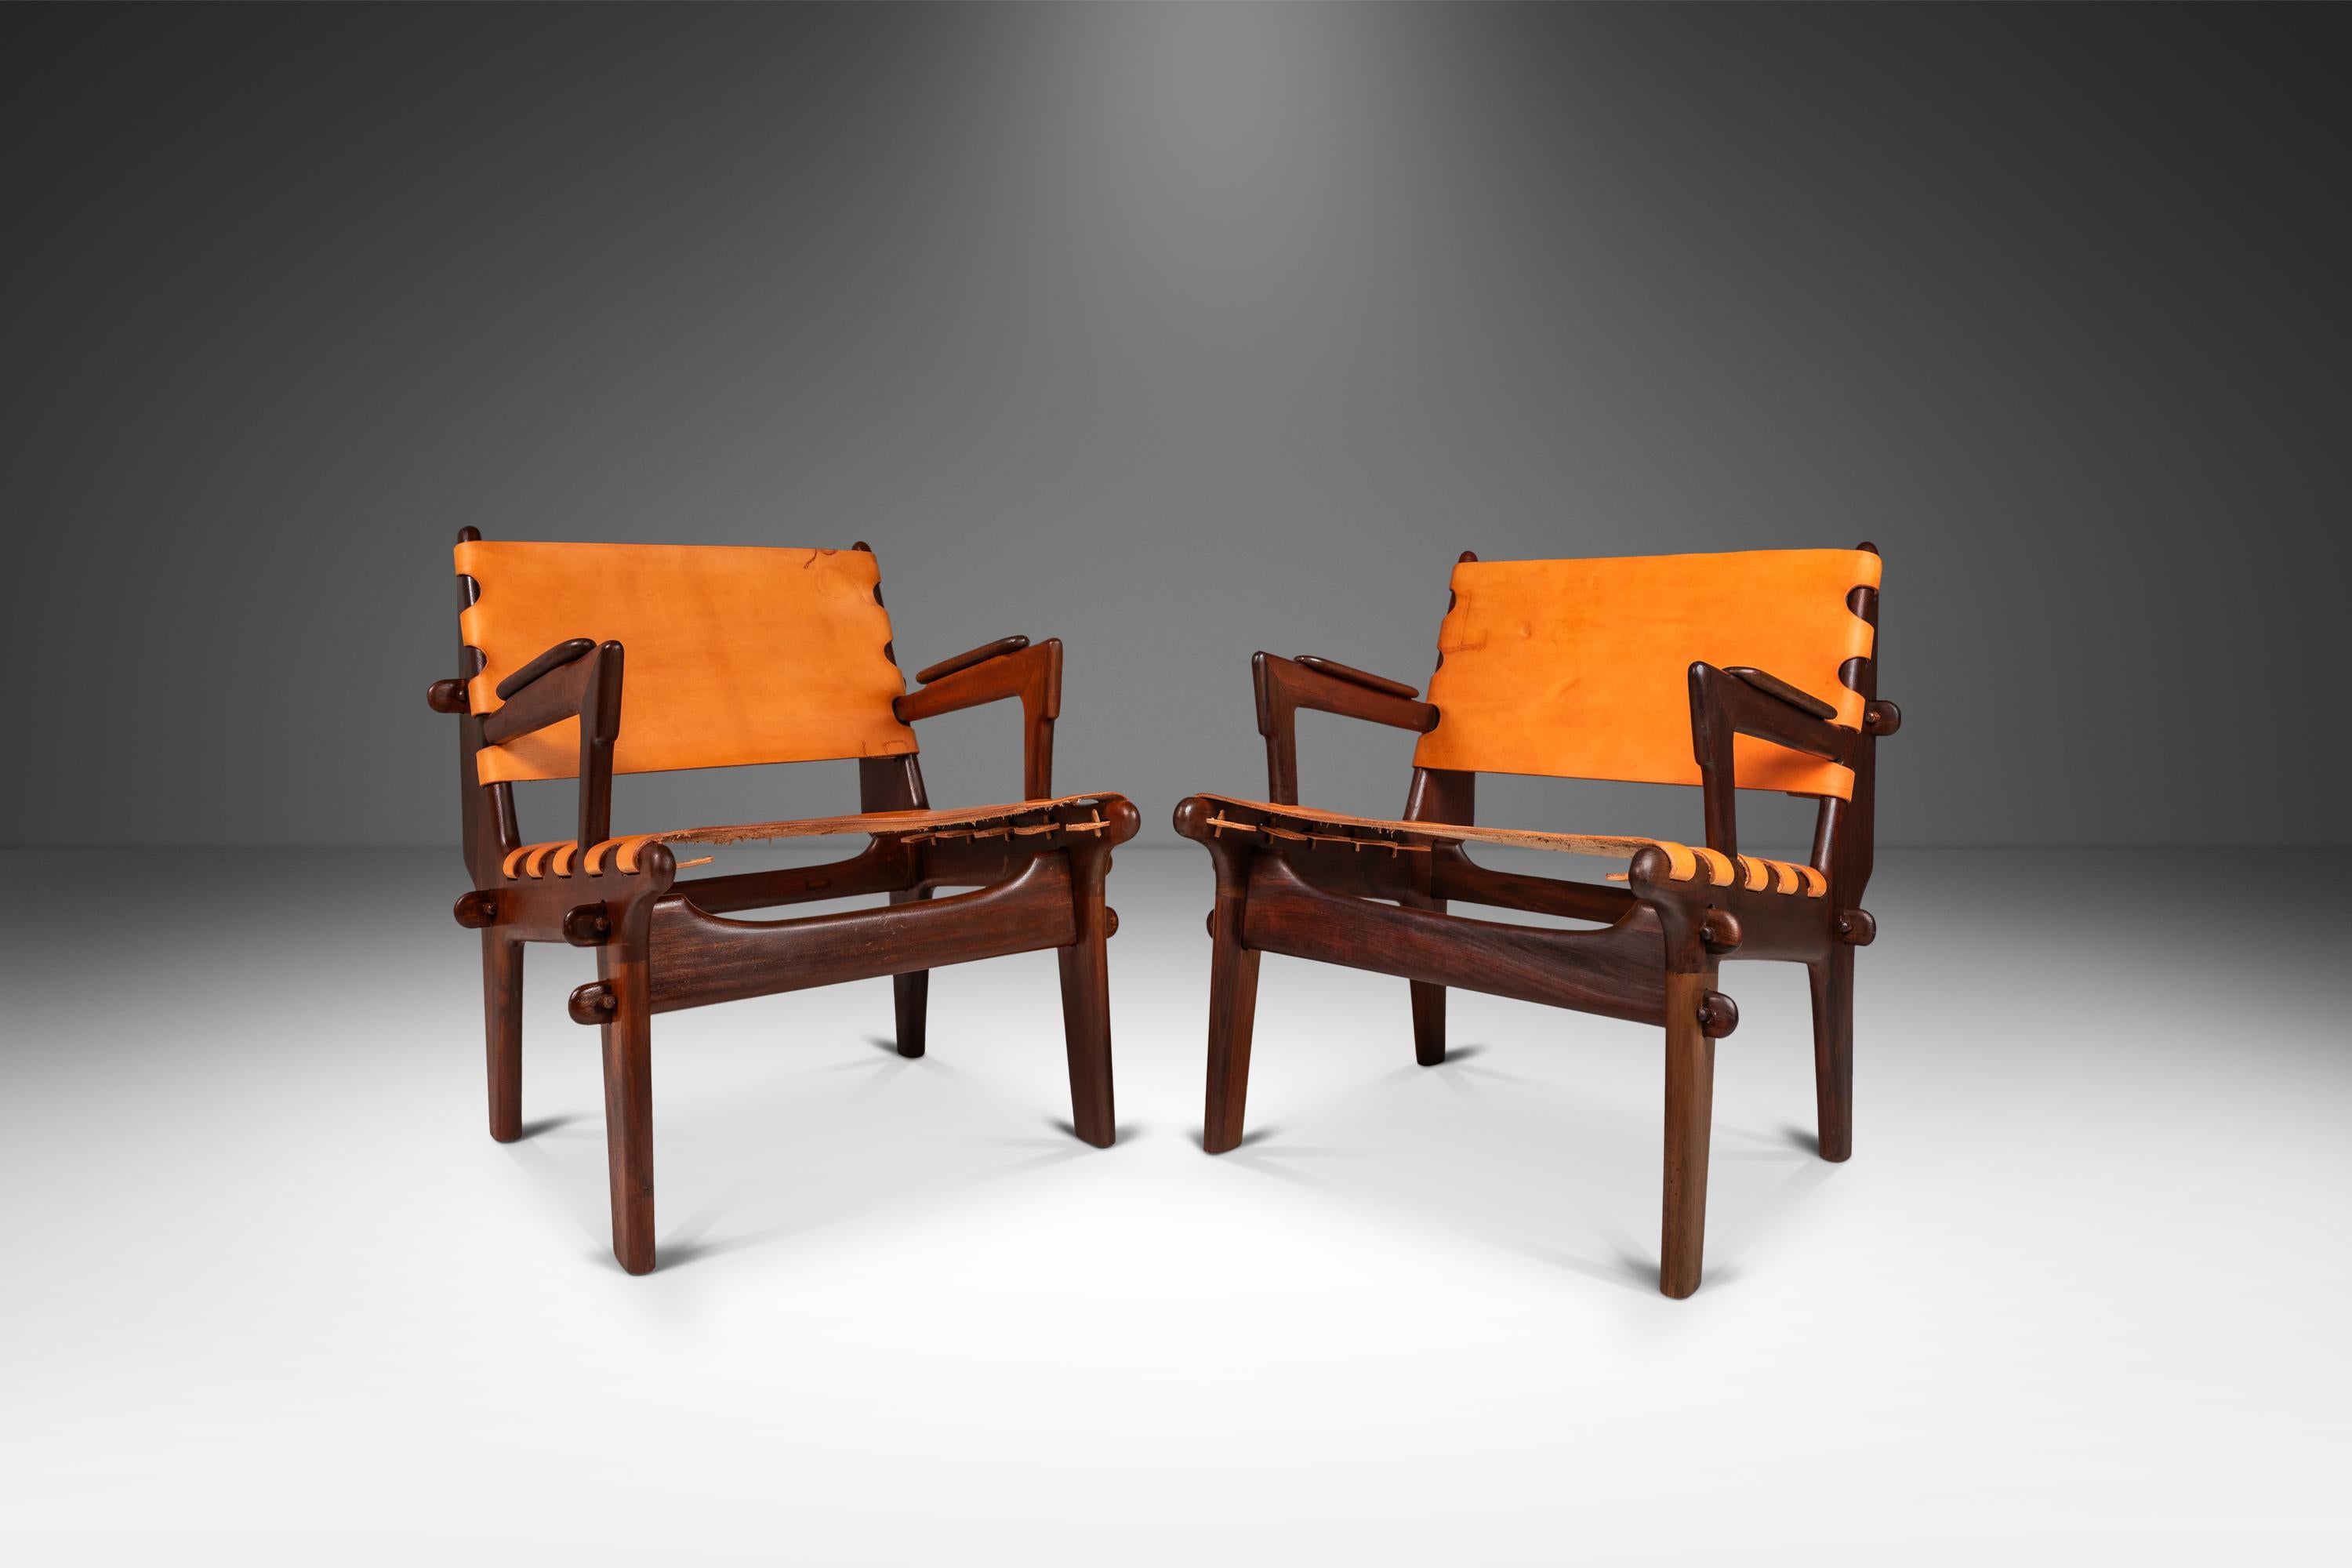  Wir präsentieren eine seltene Serie von Sling Stühlen des unvergleichlichen Angel Pazmino. Dieses ikonische Set wurde vor kurzem von unserem Handwerkerteam sorgfältig restauriert und erstrahlt in neuem Glanz - und das Ergebnis gefällt uns. Die